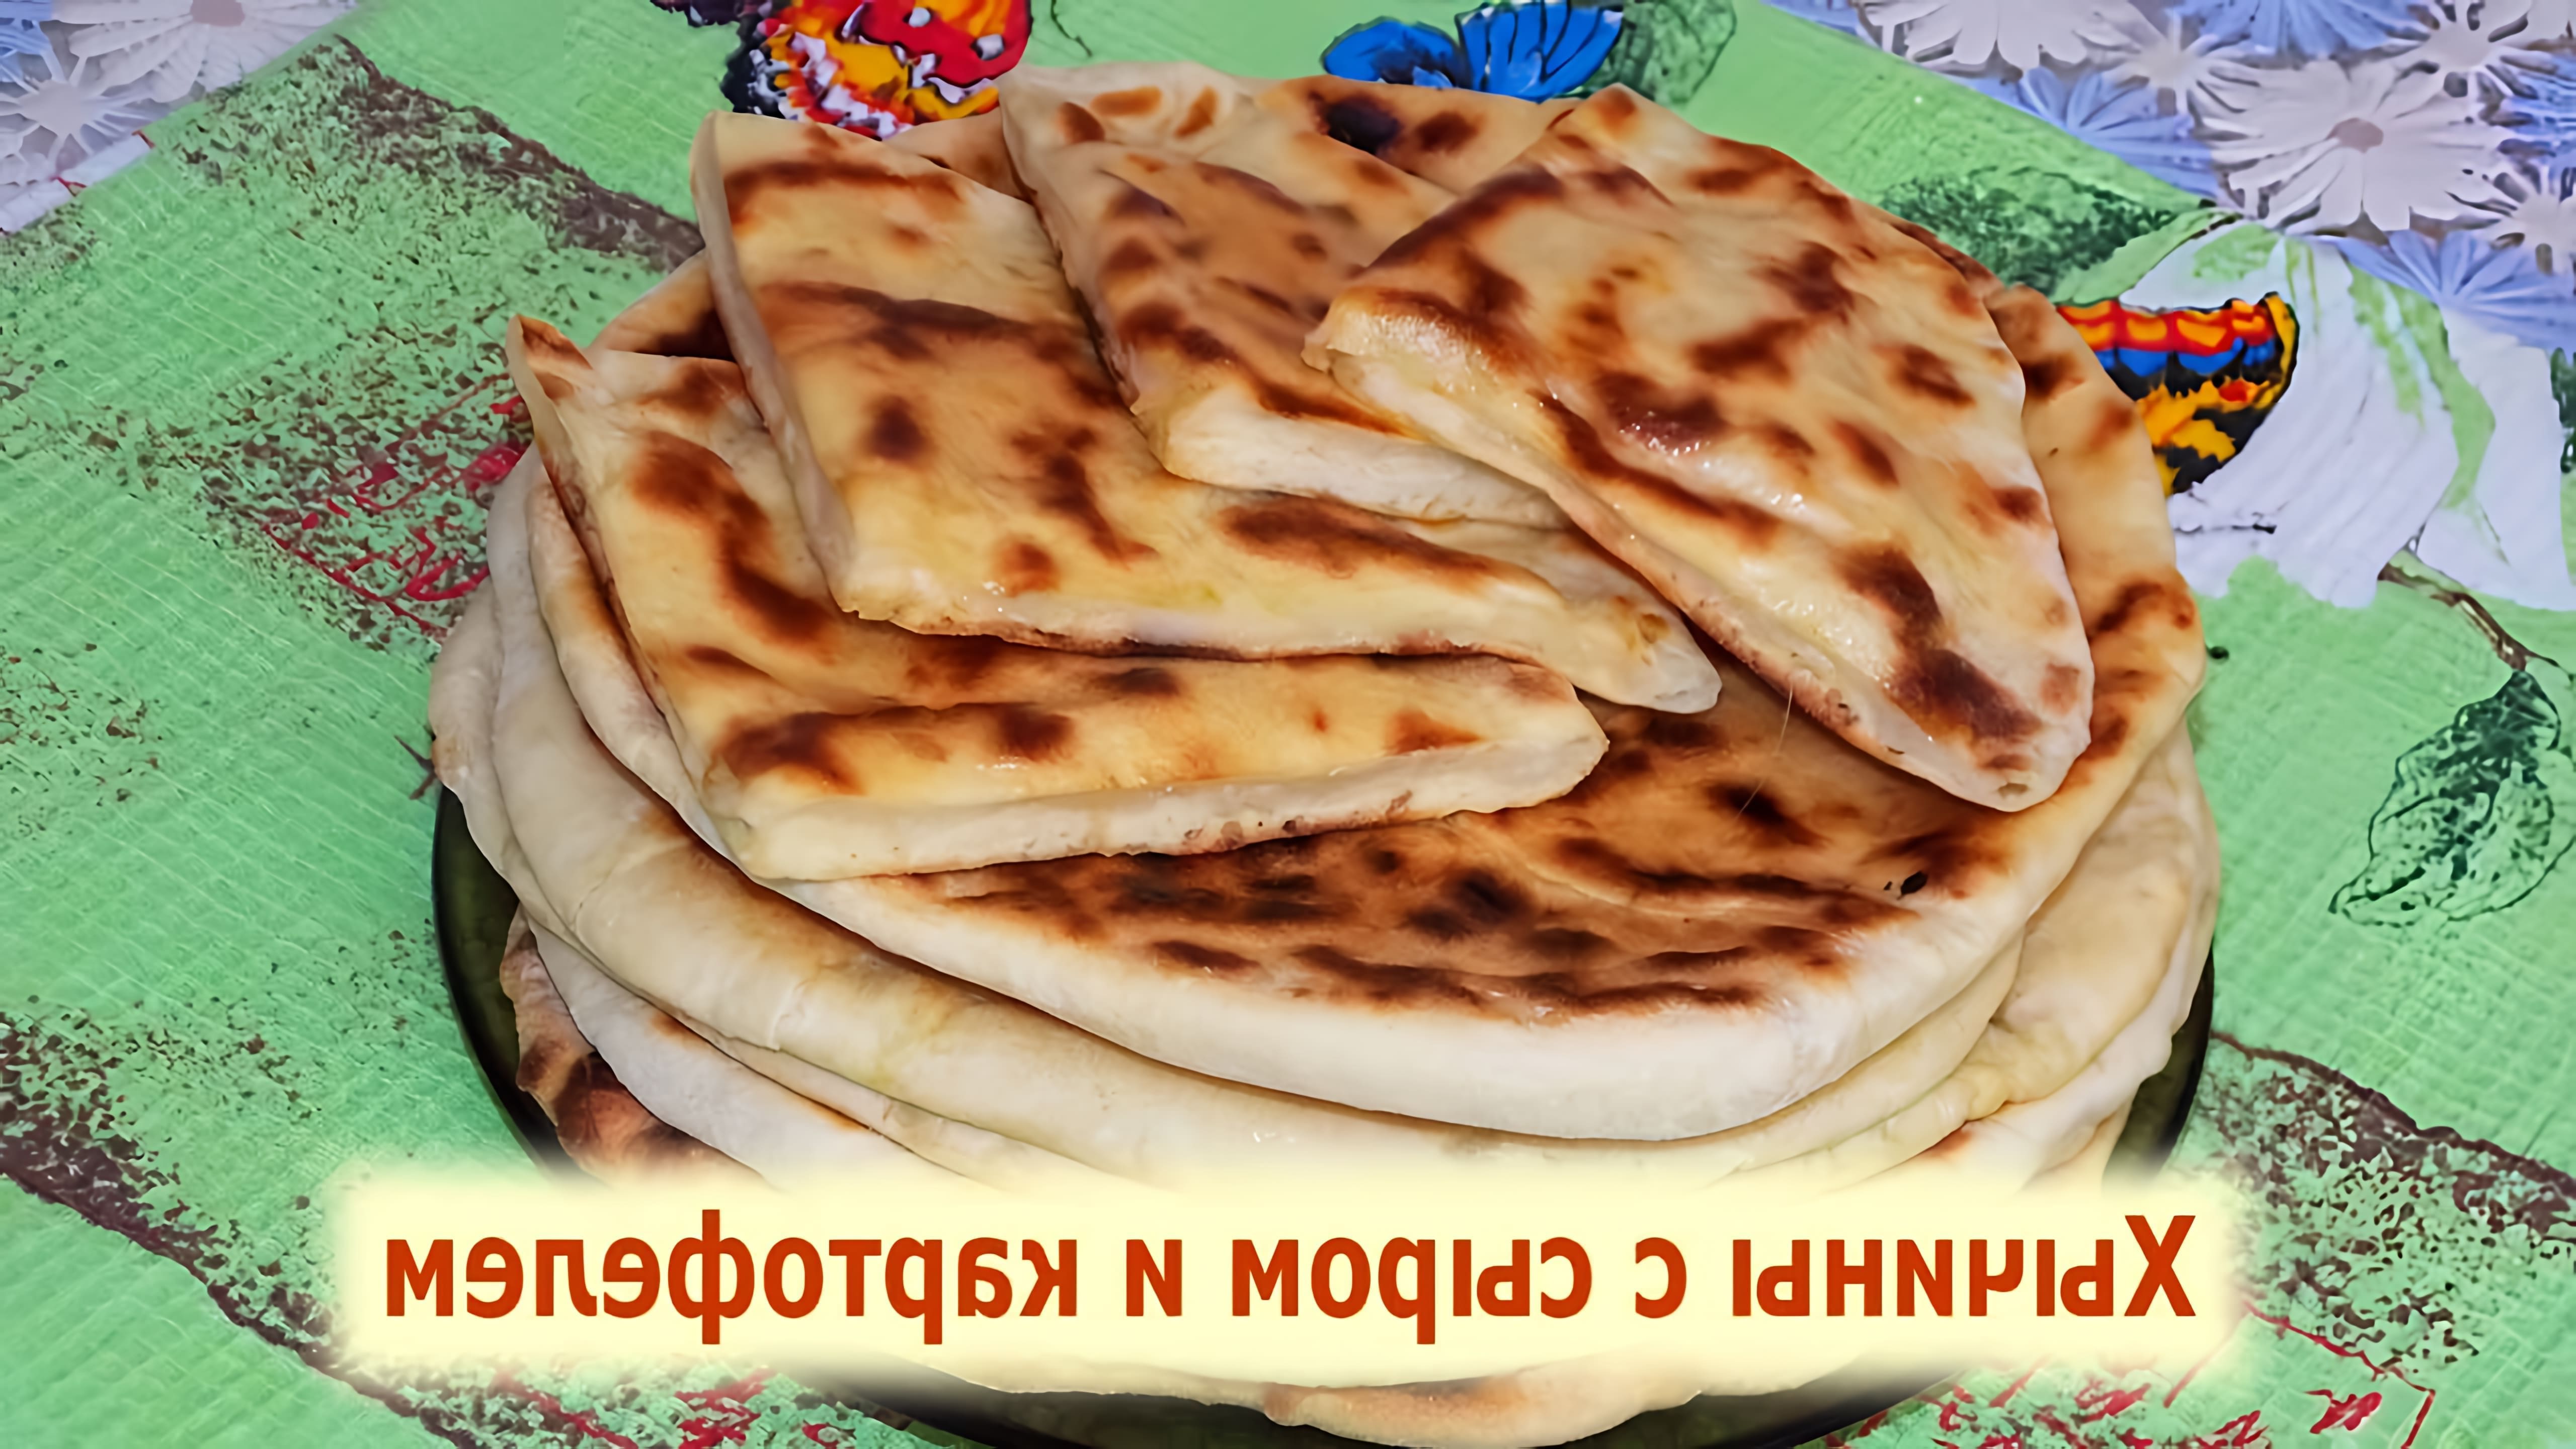 Хычины - это традиционное кавказское блюдо, которое готовится из тонкого теста с начинкой из сыра и картофеля